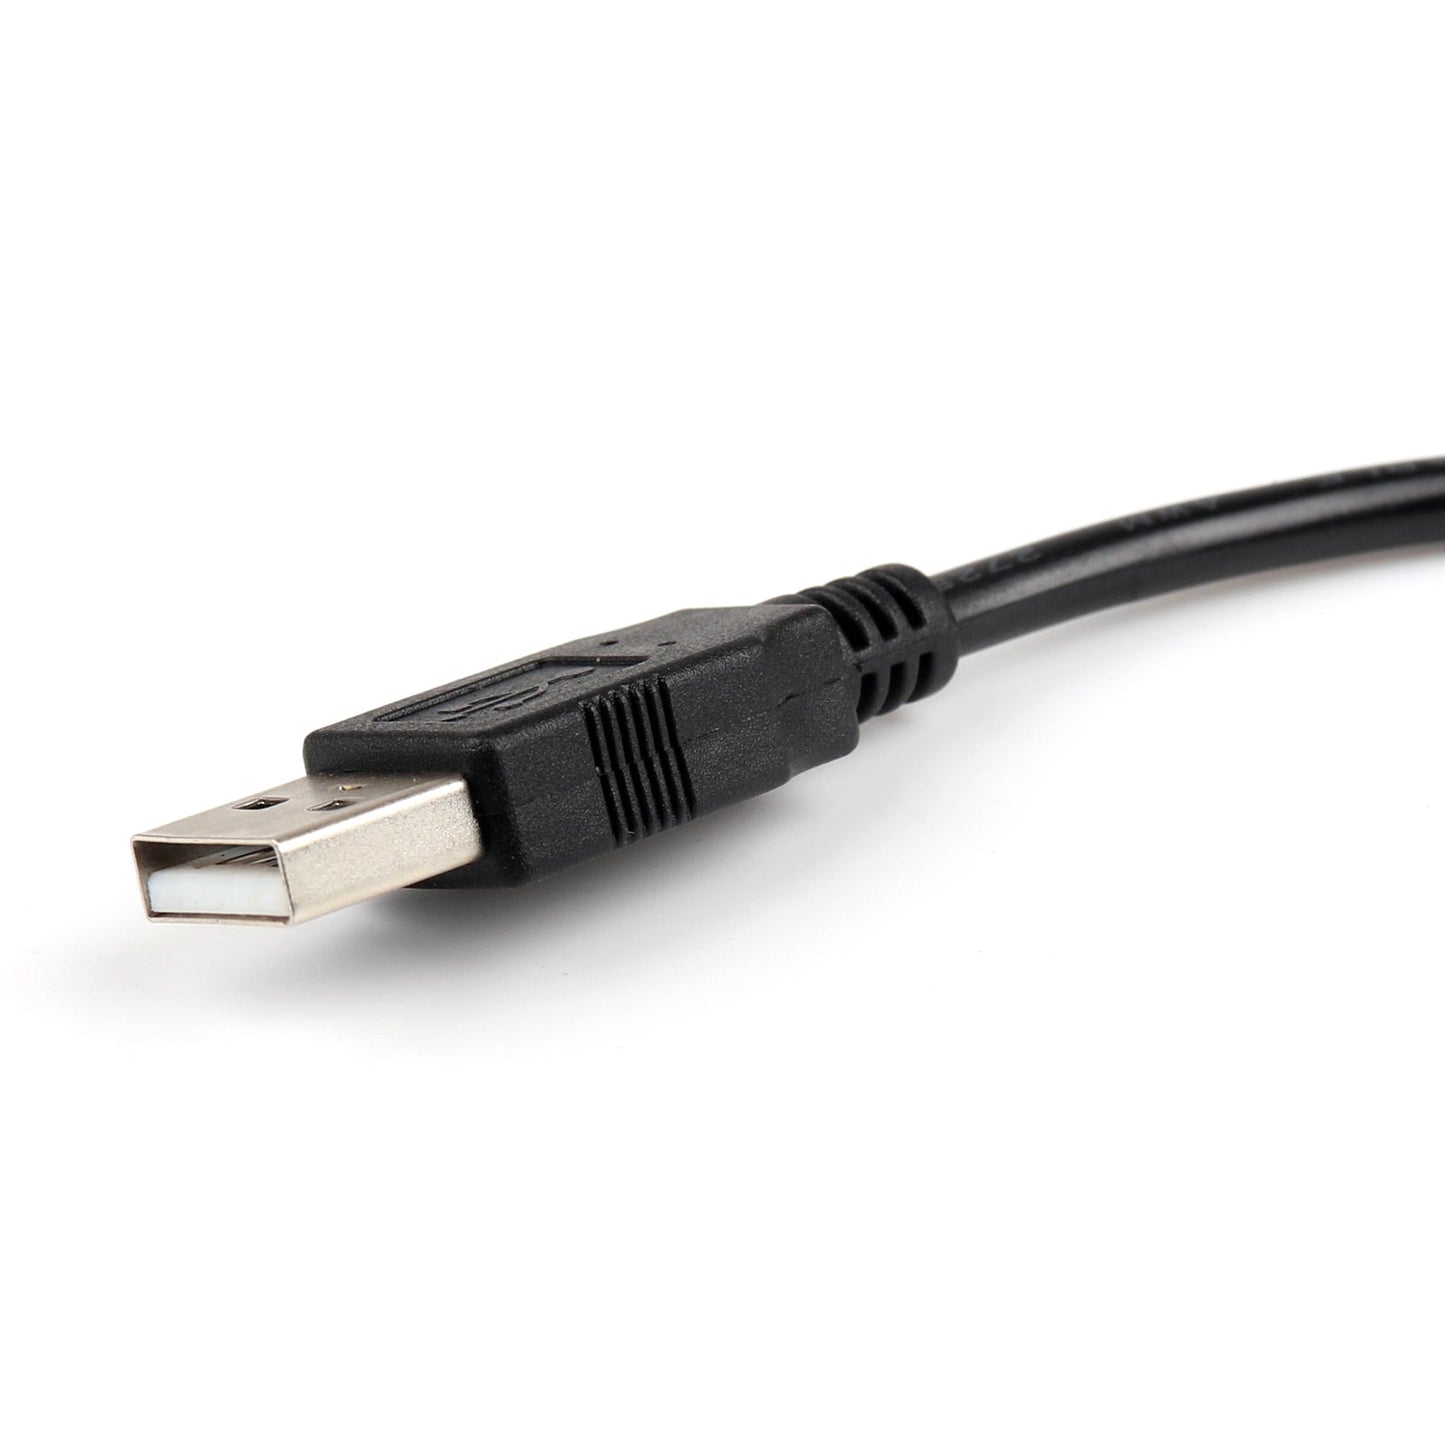 1x câble de programmation USB pour Motorola XIR P6600/6620 XPR3300/3500 DP3441